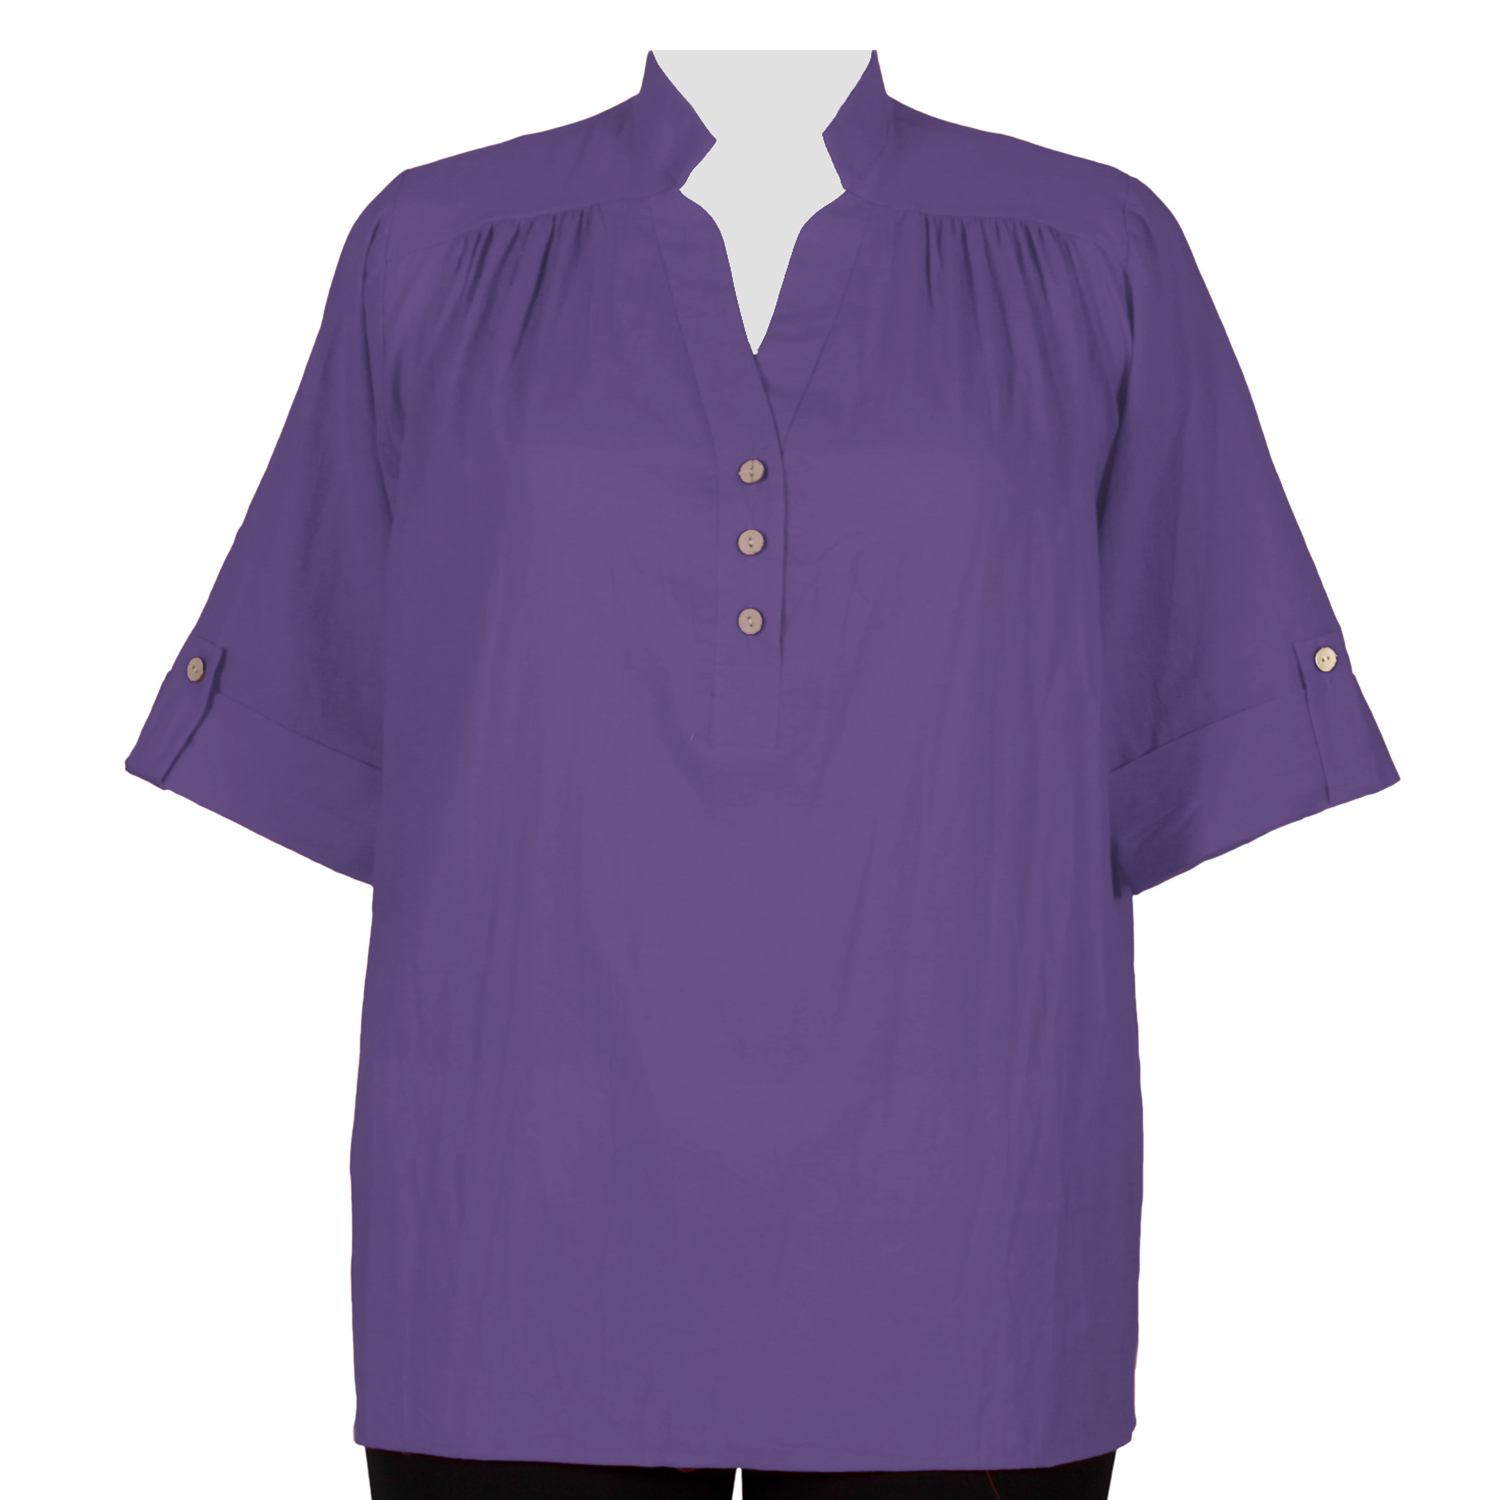 A Personal Touch Women's Plus Size Purple Gauze Placket Blouse 